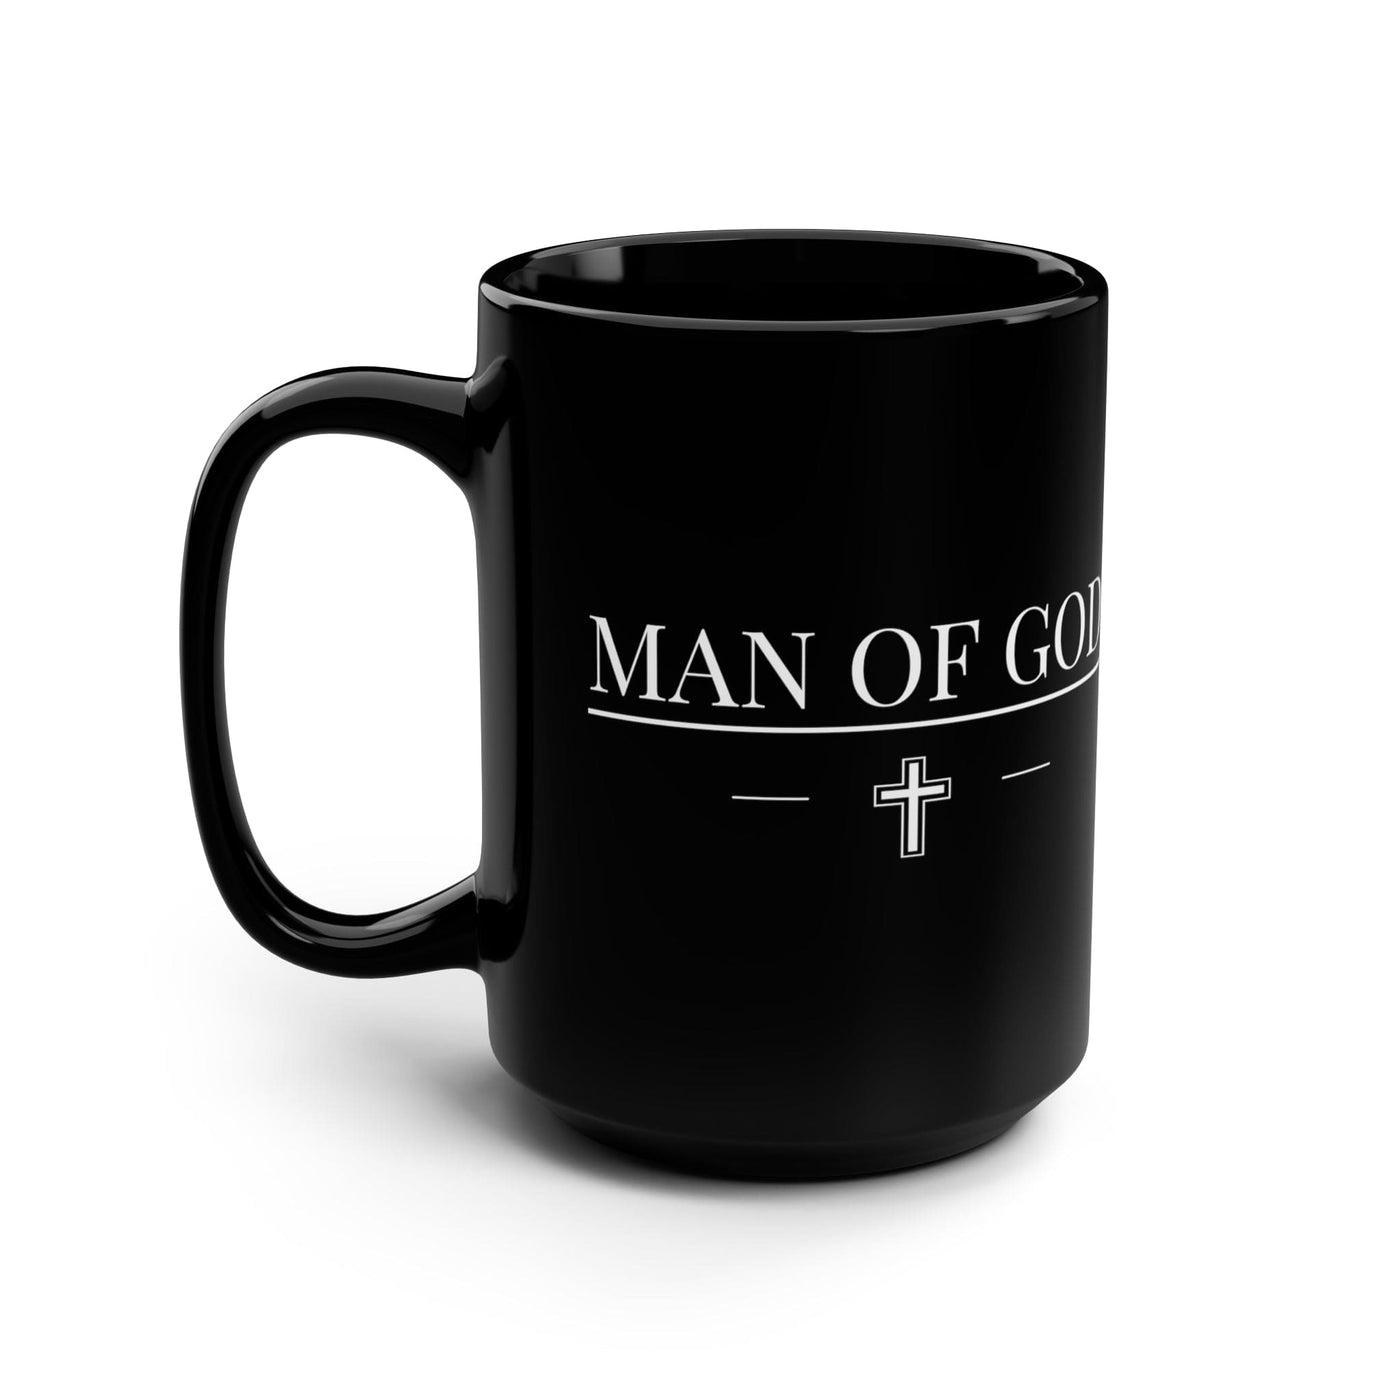 Black Ceramic Mug - 15oz Man Of God Print